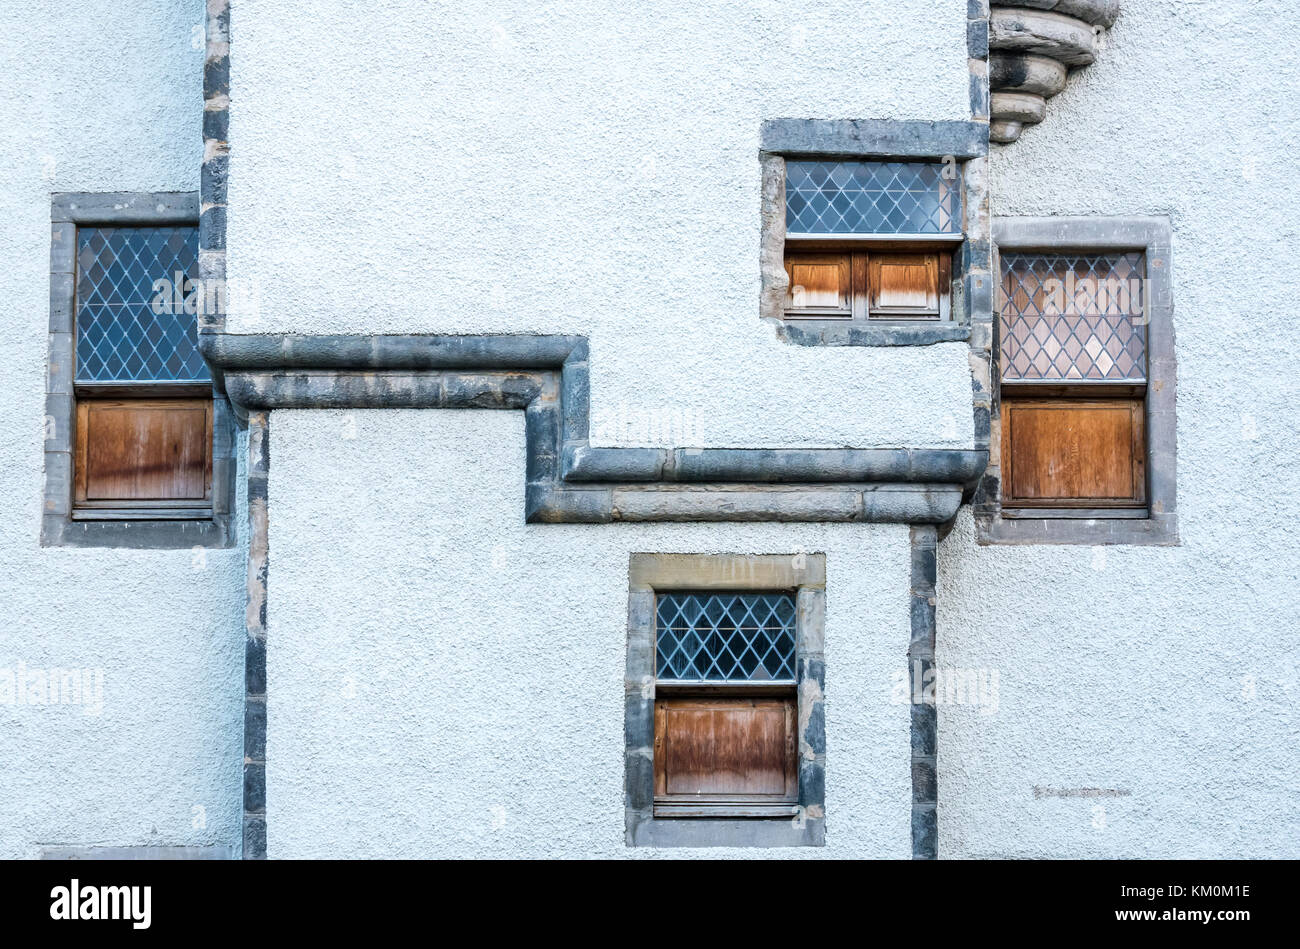 Schrullige Gitter Fenster mit Fensterläden, 17. Jahrhundert hanseatisches Handelshaus, Lämmer Haus, Leith, Edinburgh, Schottland, Großbritannien, Kategorie ein denkmalgeschütztes Gebäude Stockfoto